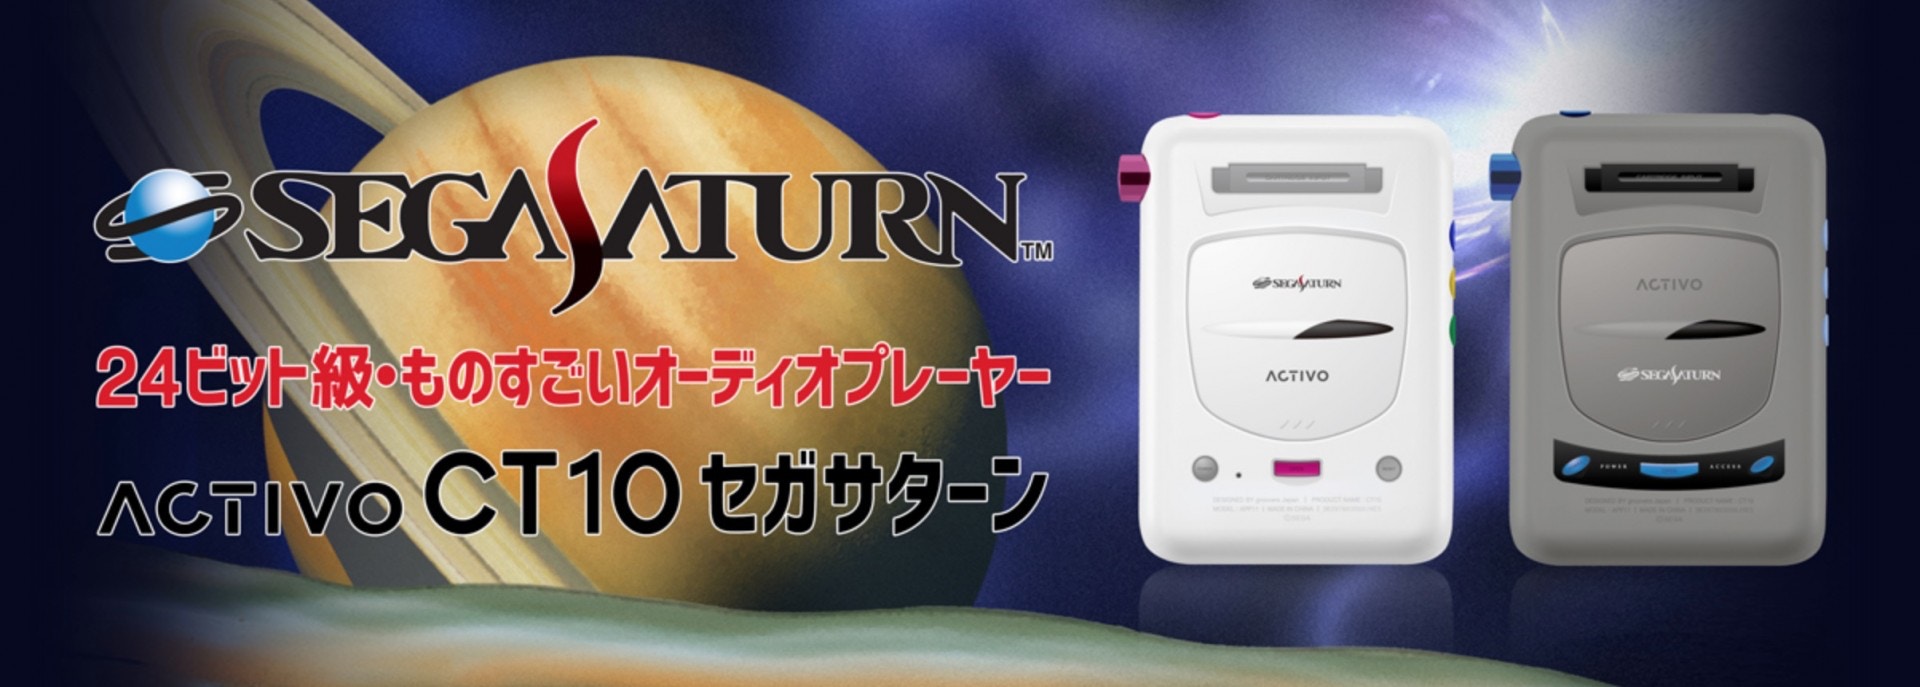 Sega Saturn volta as lojas japonesas como um reprodutor de músicas. Kj9jpLYW3XtRKrV5eFTImKsXst88gJo-CdlvLQnZby0?v=w1920